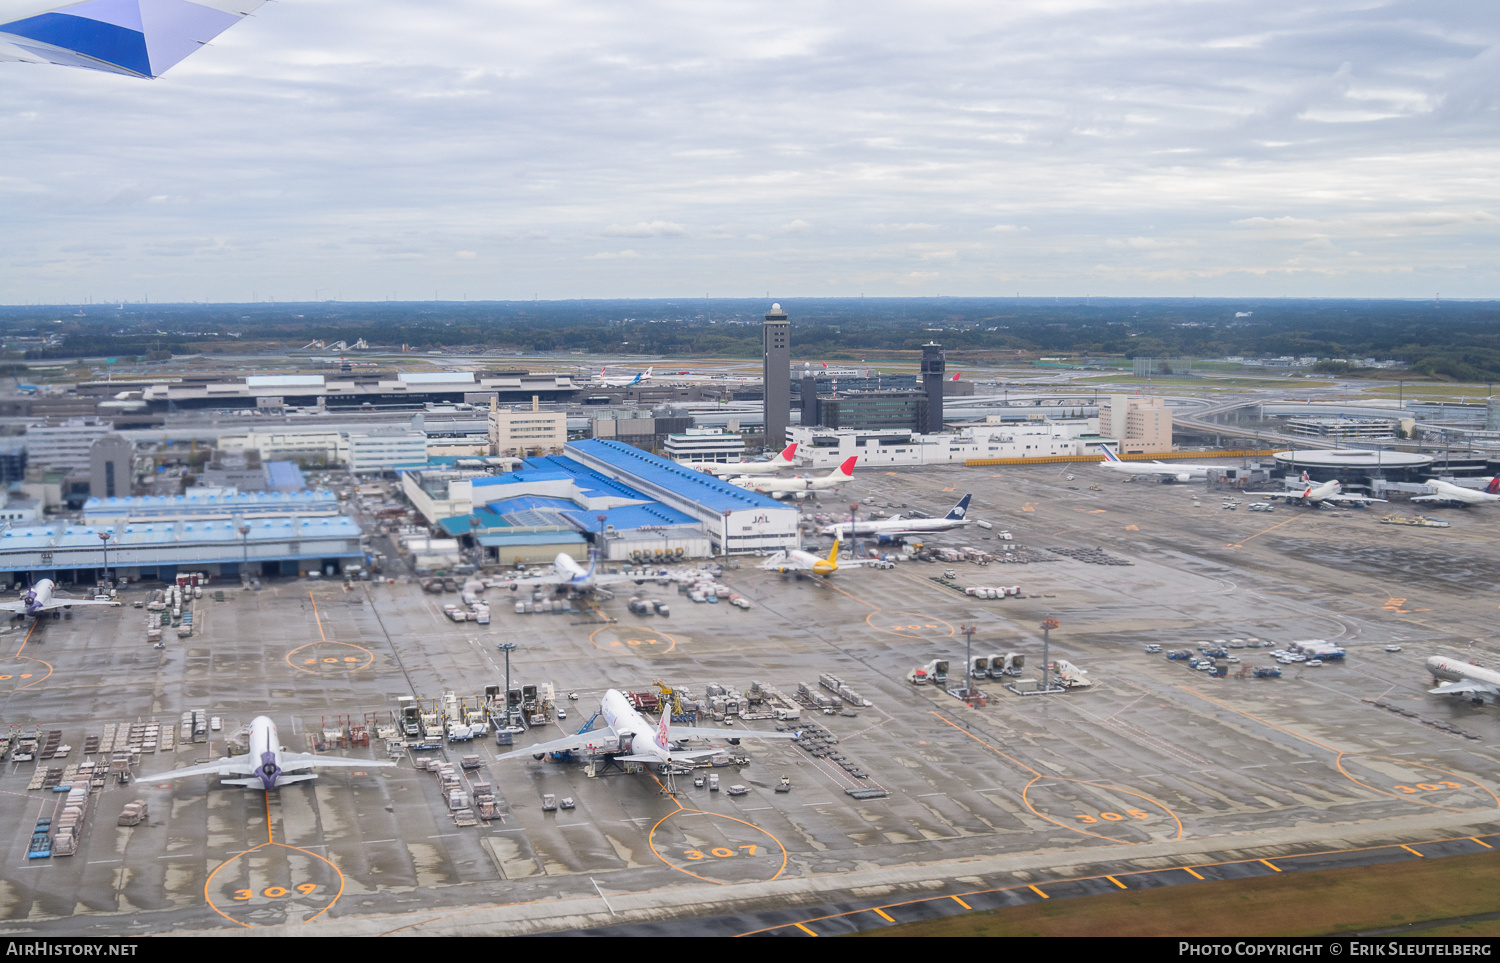 Airport photo of Tokyo - Narita International (RJAA / NRT) in Japan | AirHistory.net #356704